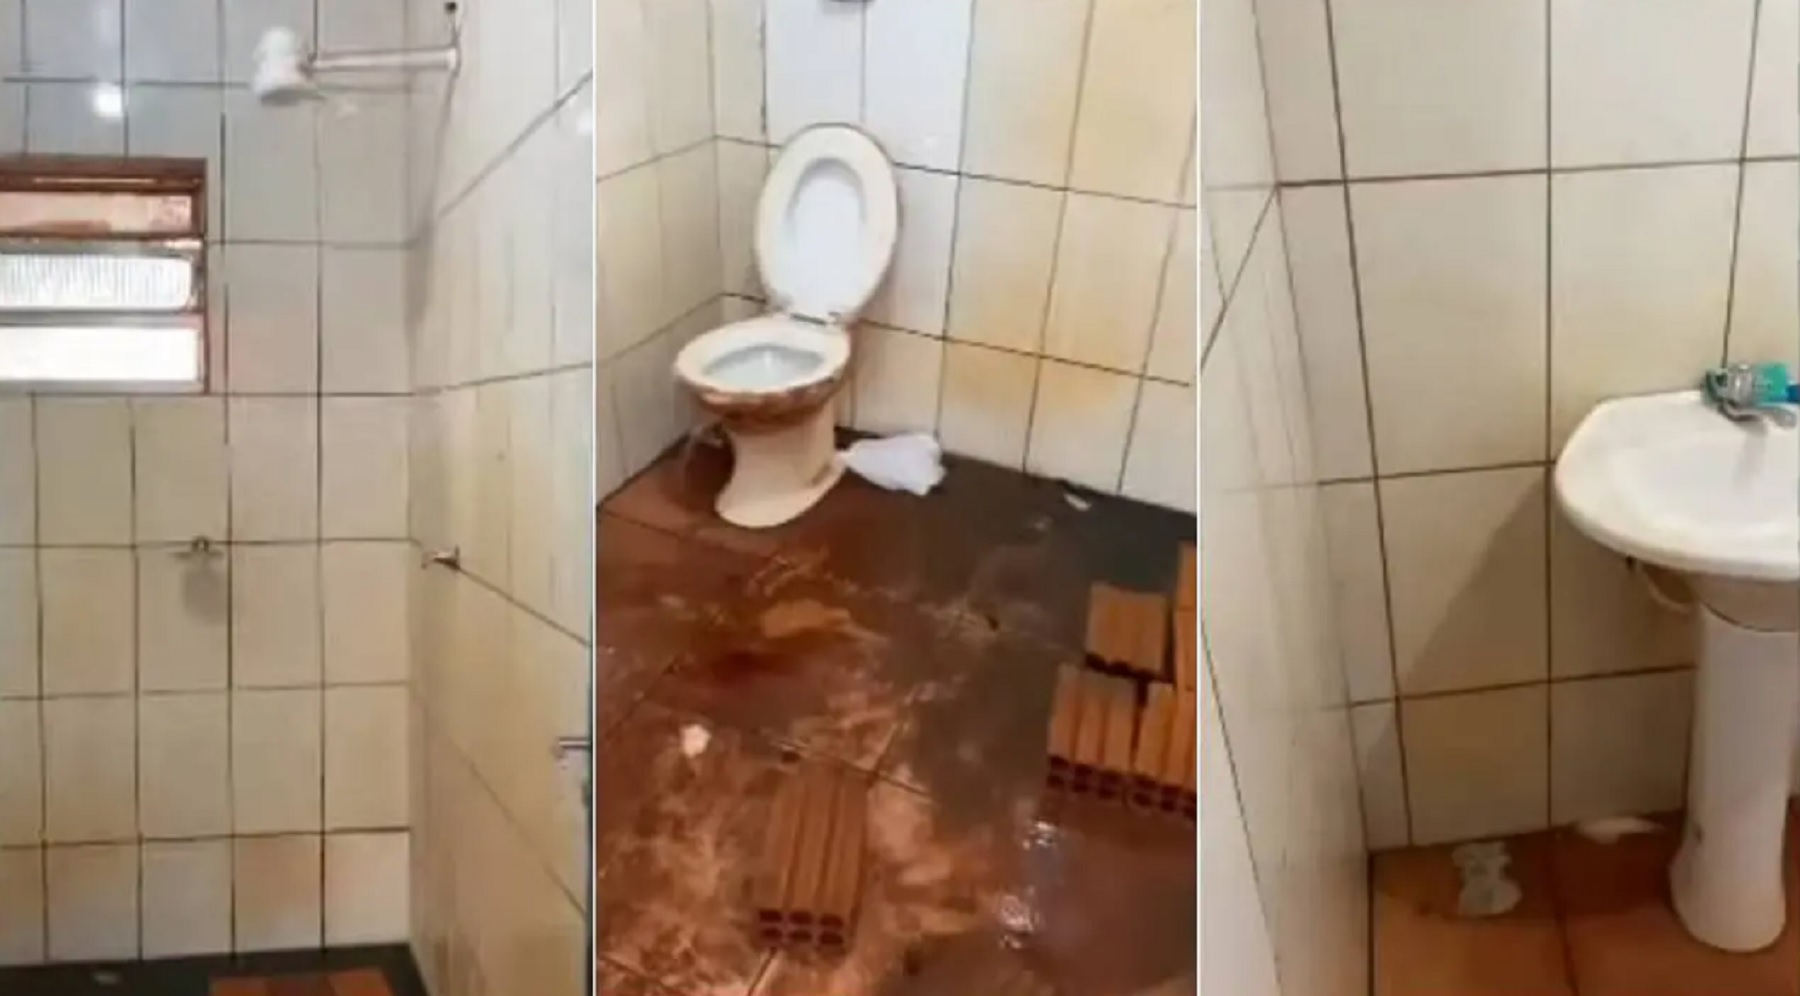 Caminhoneiro receberá R$ 10 mil por falta de higiene em banheiro da empresa